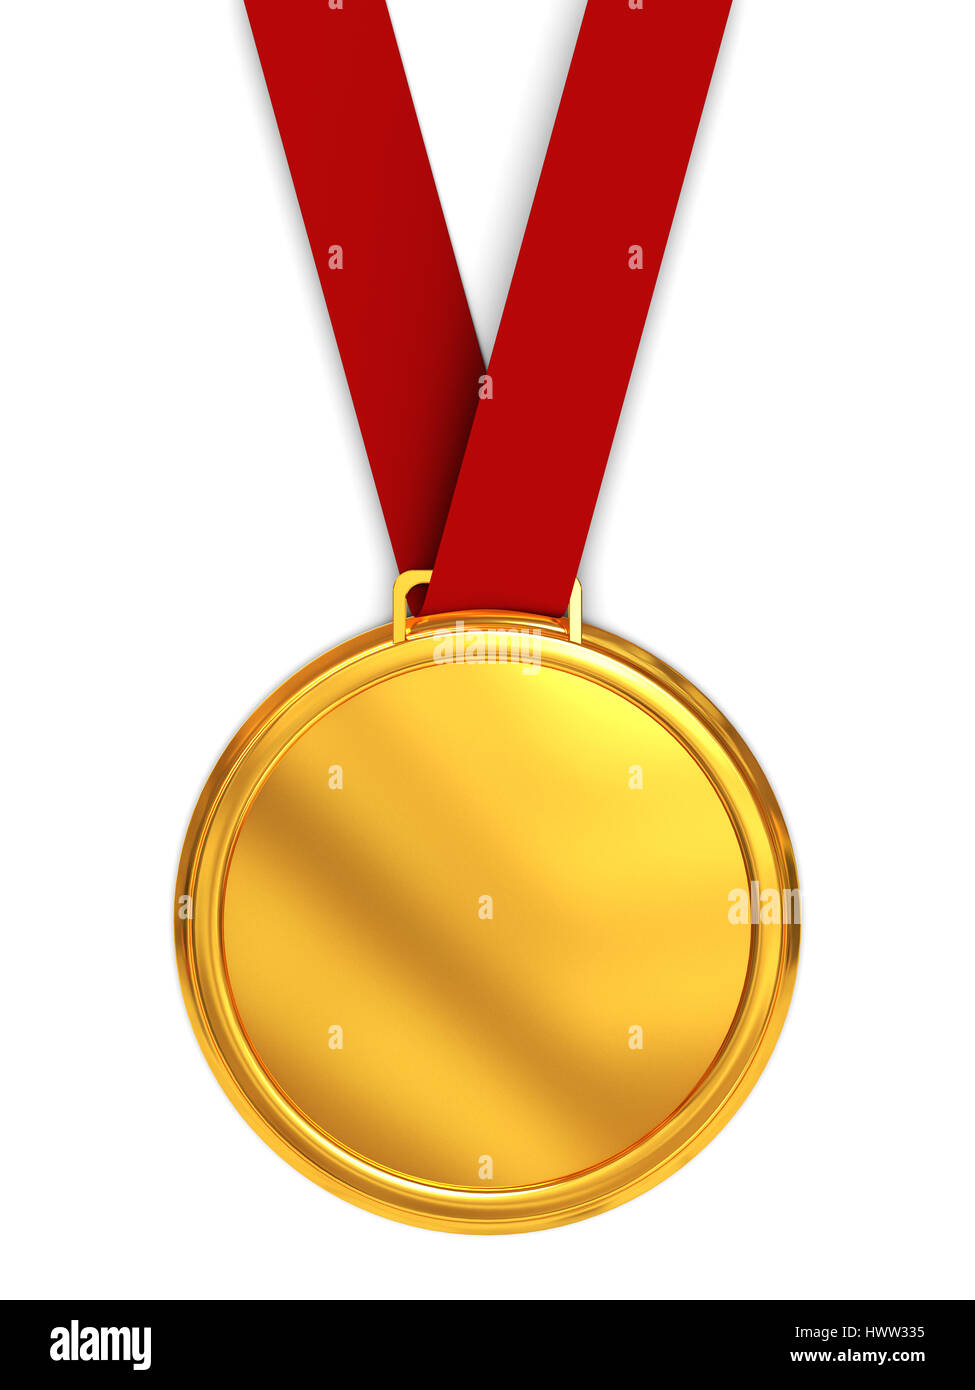 3d illustration of golden medal over white background Stock Photo